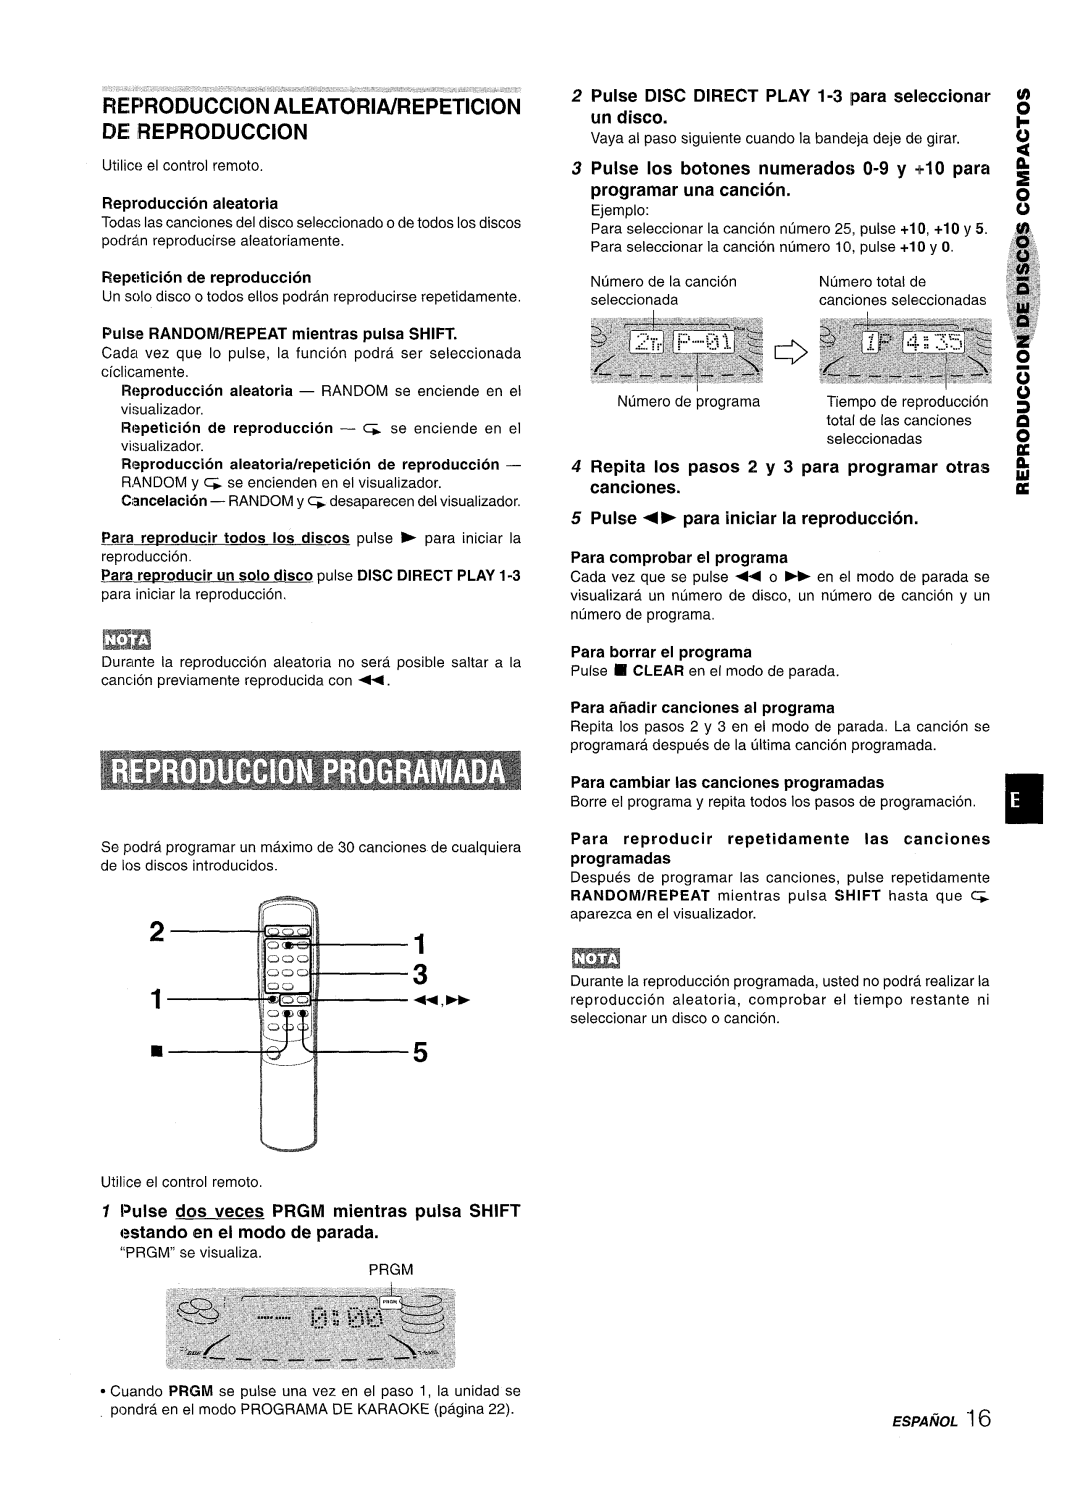 Sony NSX-A707 manual tWF~RODUCCION ALEATORIA/REPETITION DE IREPRODUCCION, canciones, Reproduction aleatoria 